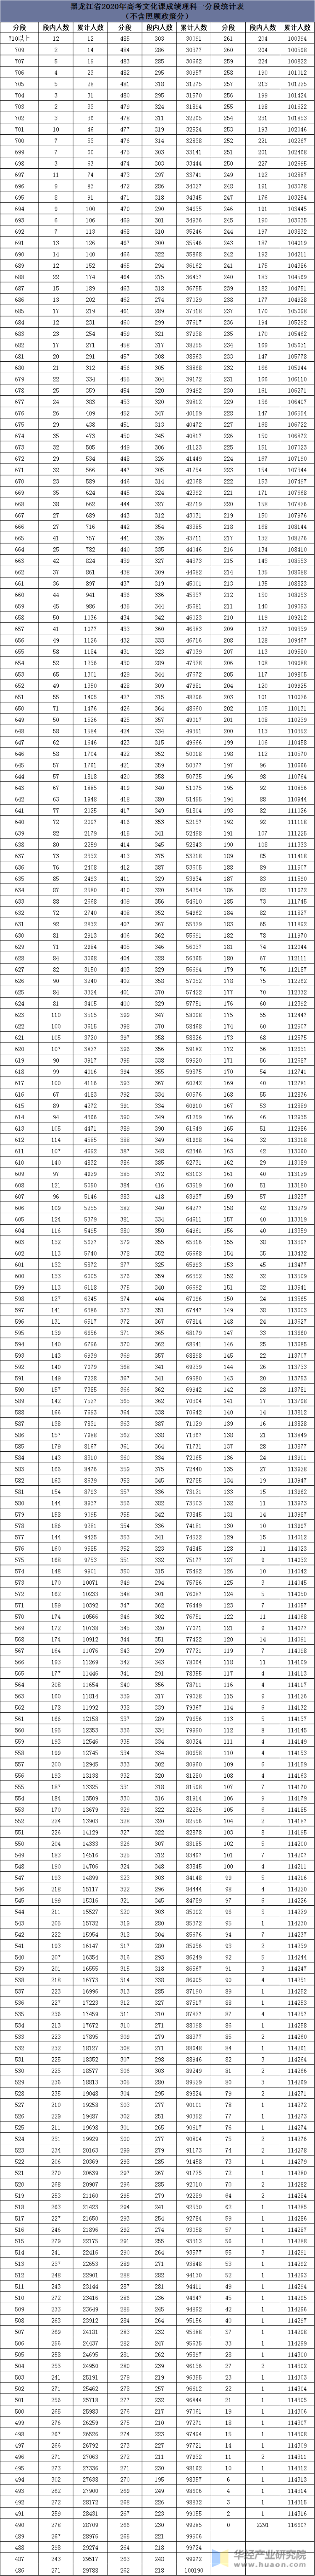 2020年黑龙江省高考理工分段表